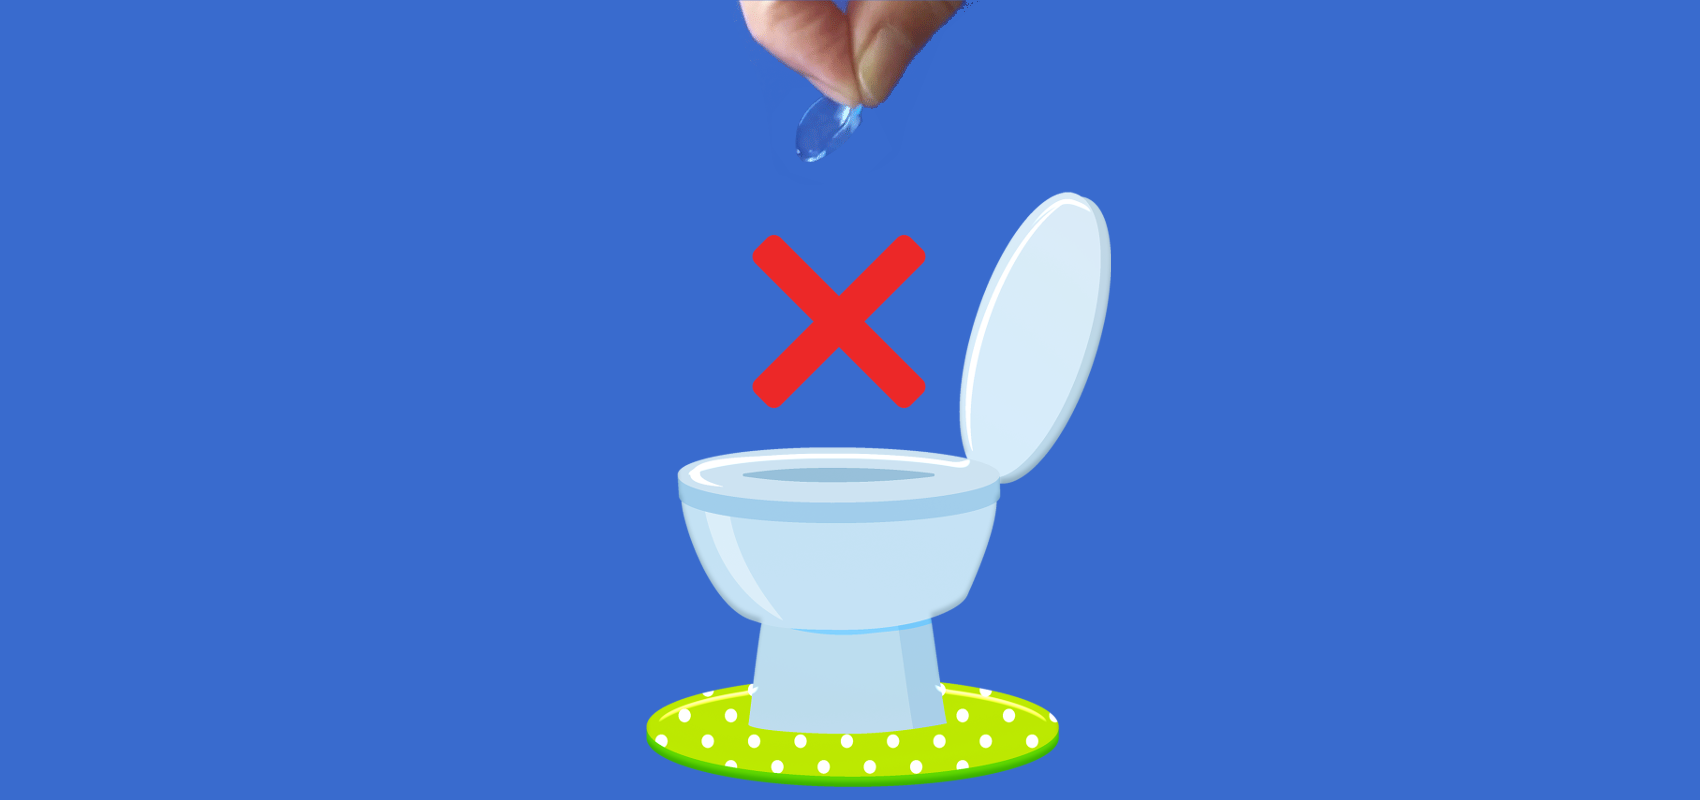 Kontaktlinsen nicht in der Toilette entsorgen!